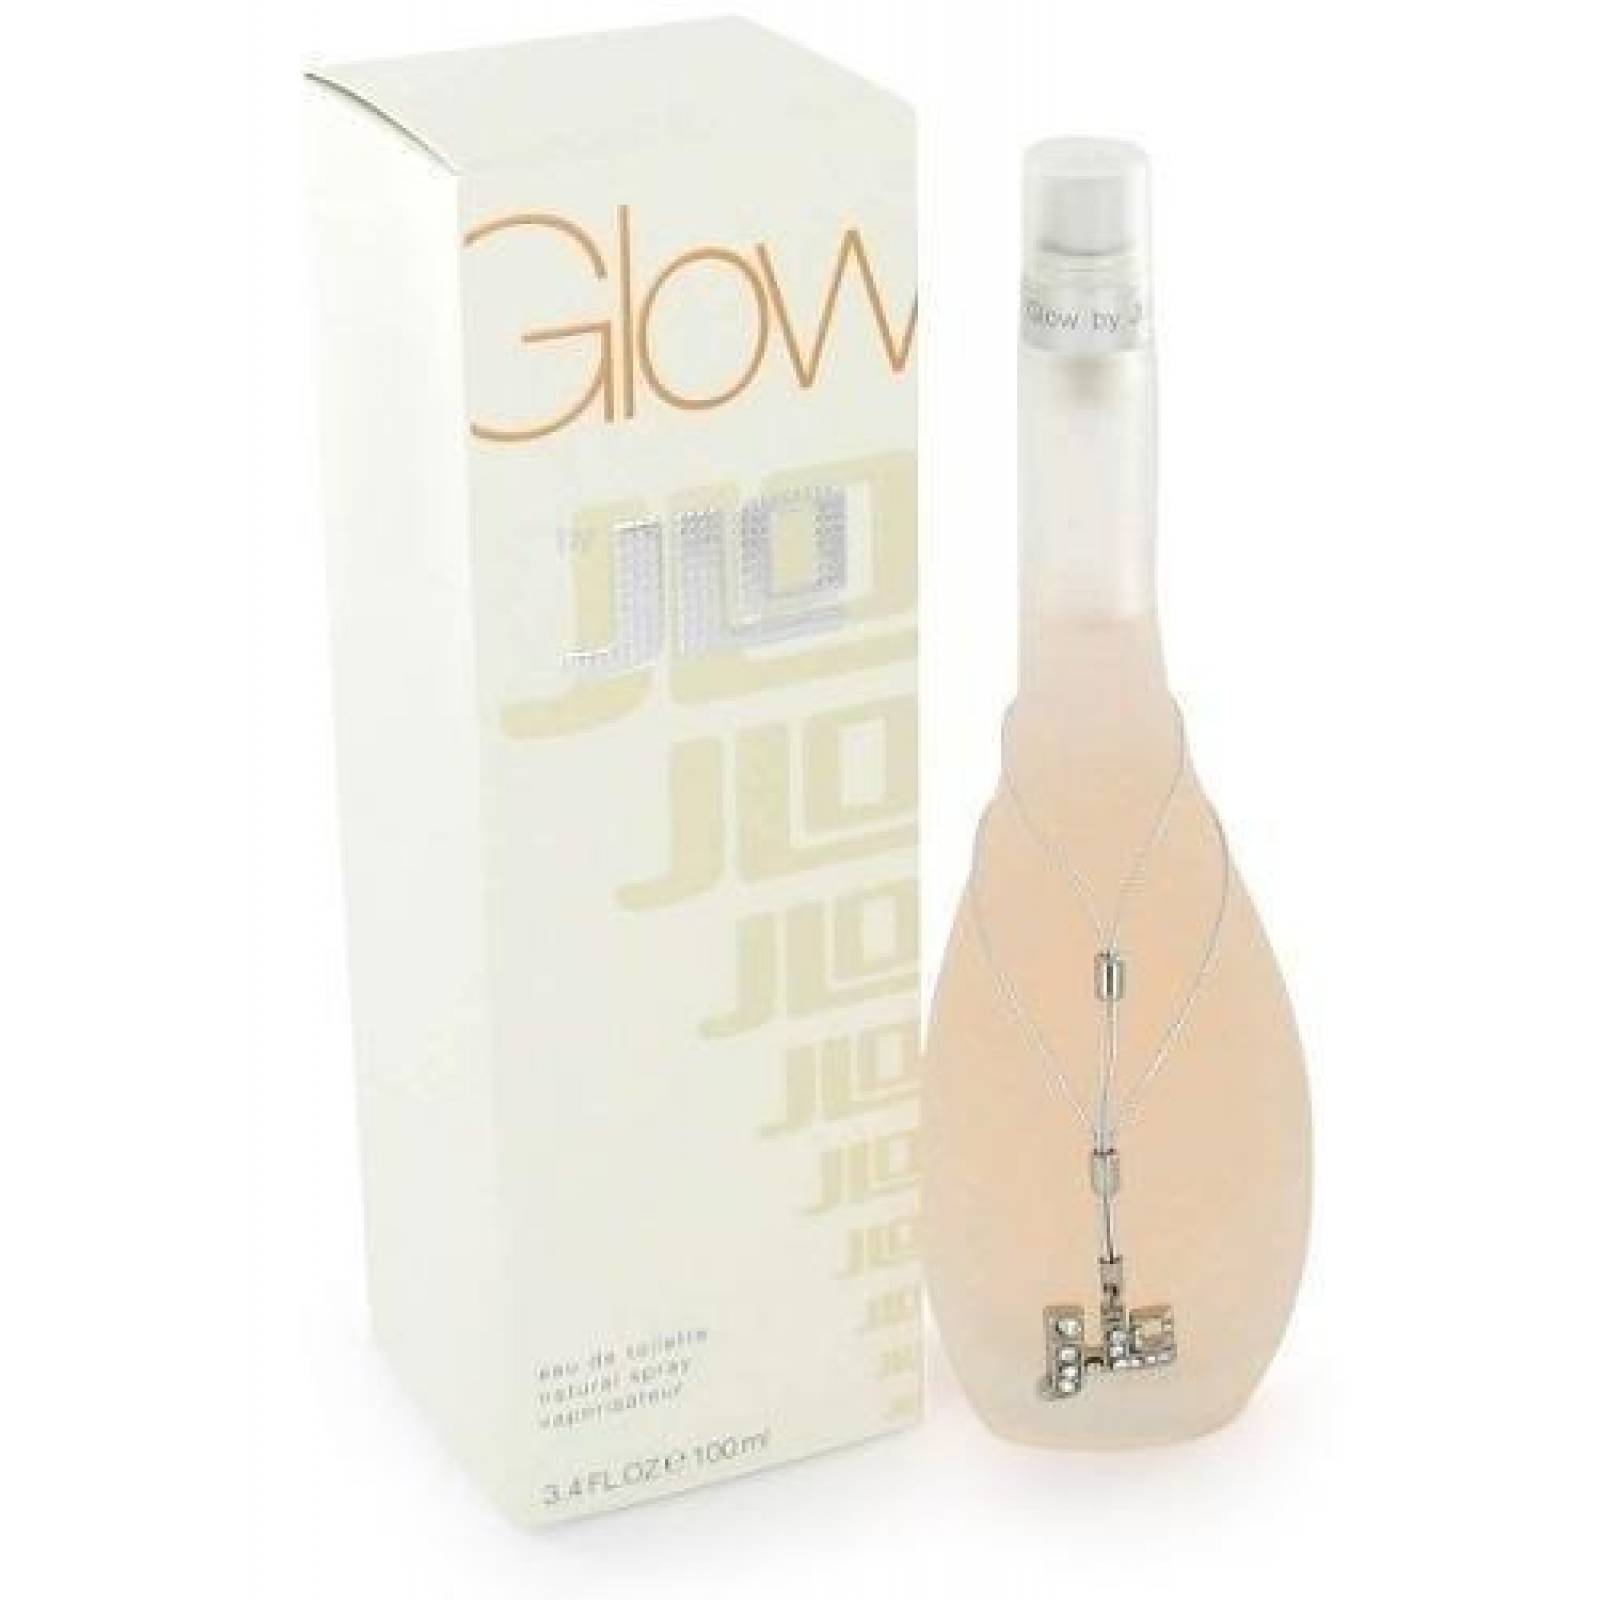 Glow Dama 100 Ml Jennifer Lopez Spray - Perfume Original